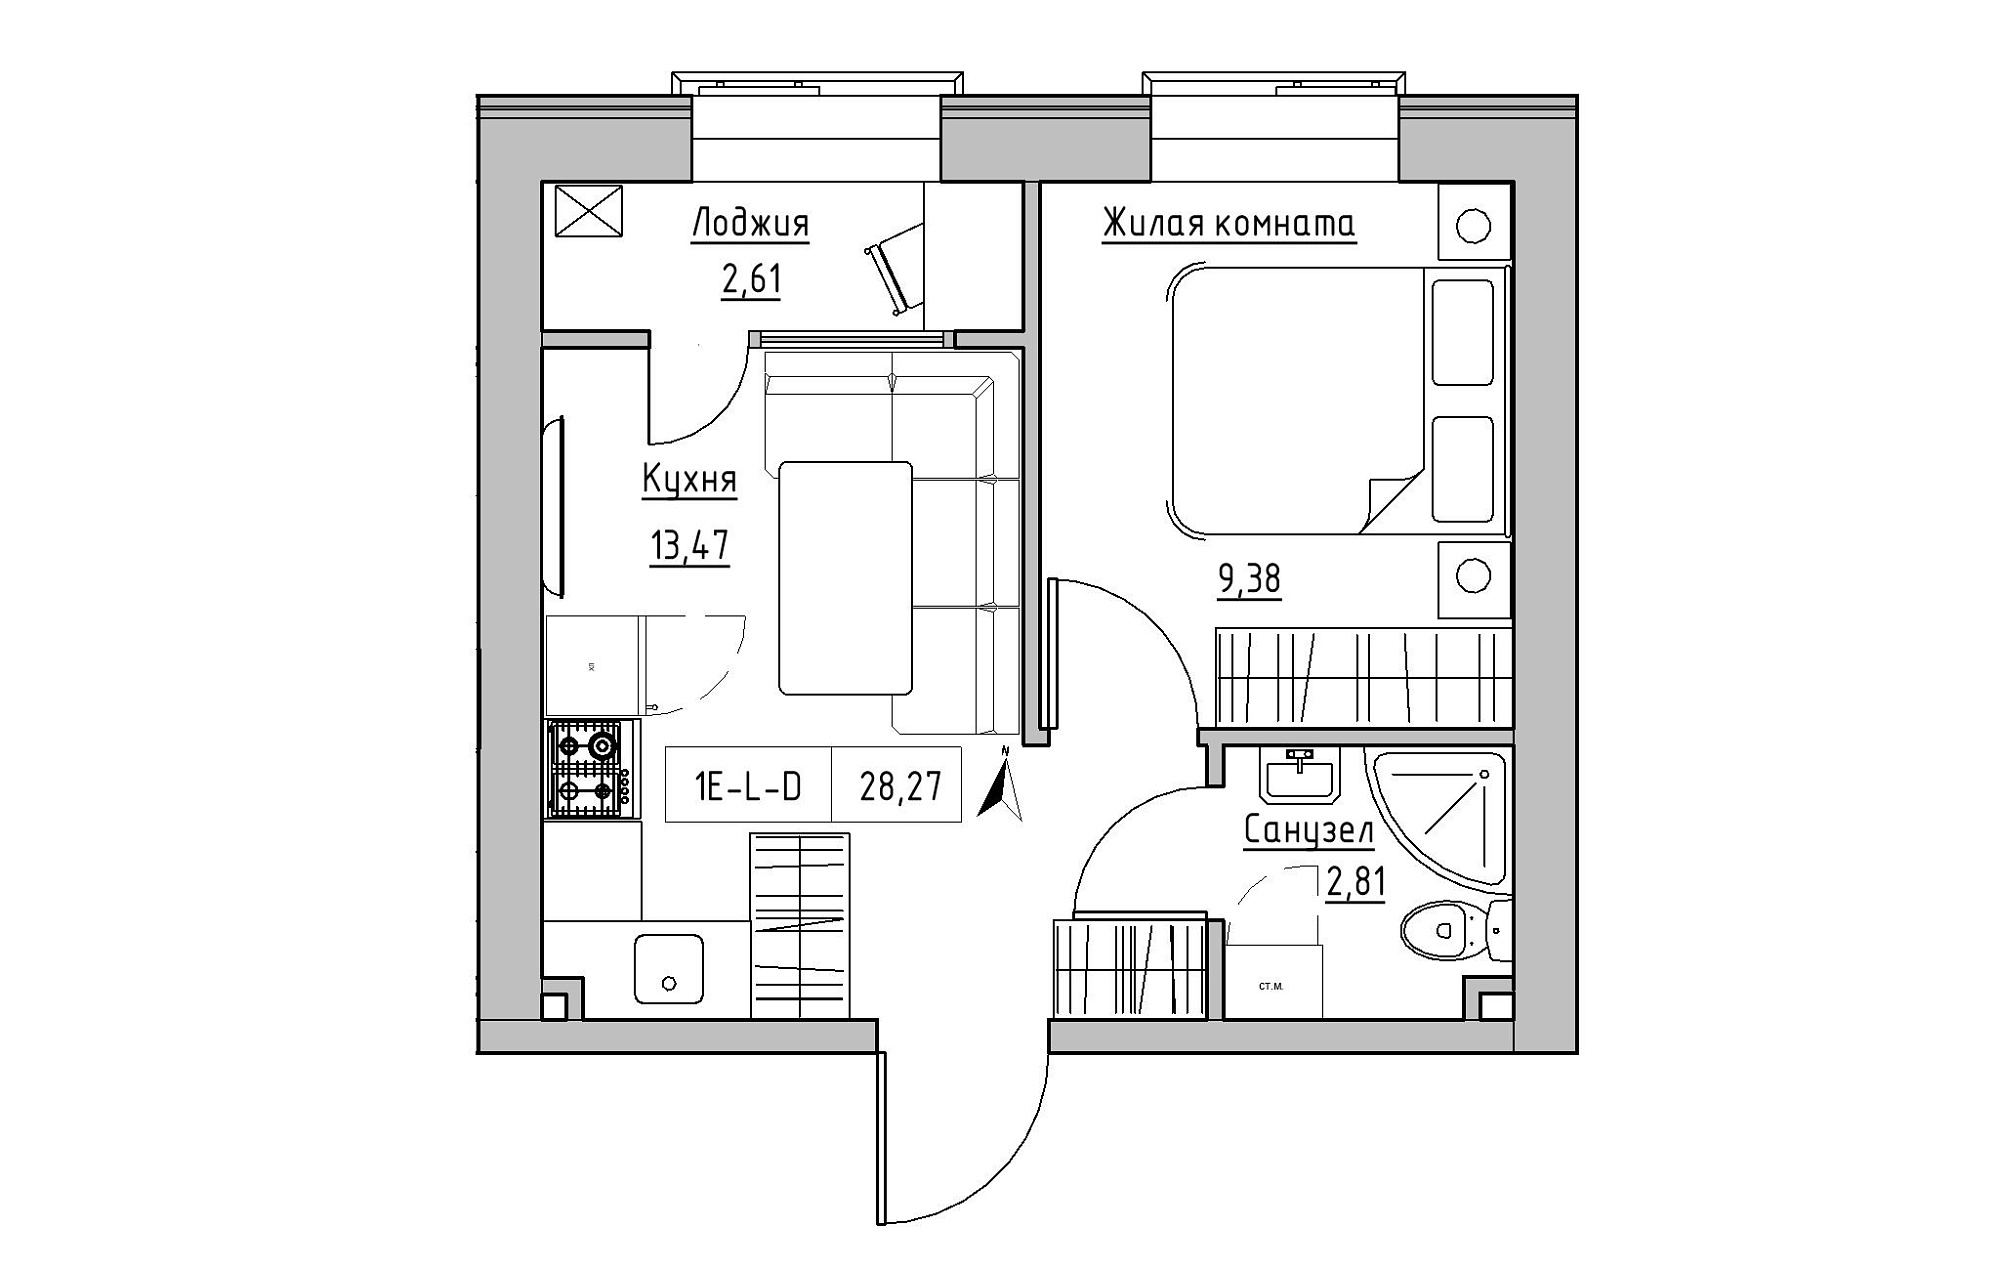 Планування 1-к квартира площею 28.27м2, KS-019-03/0015.